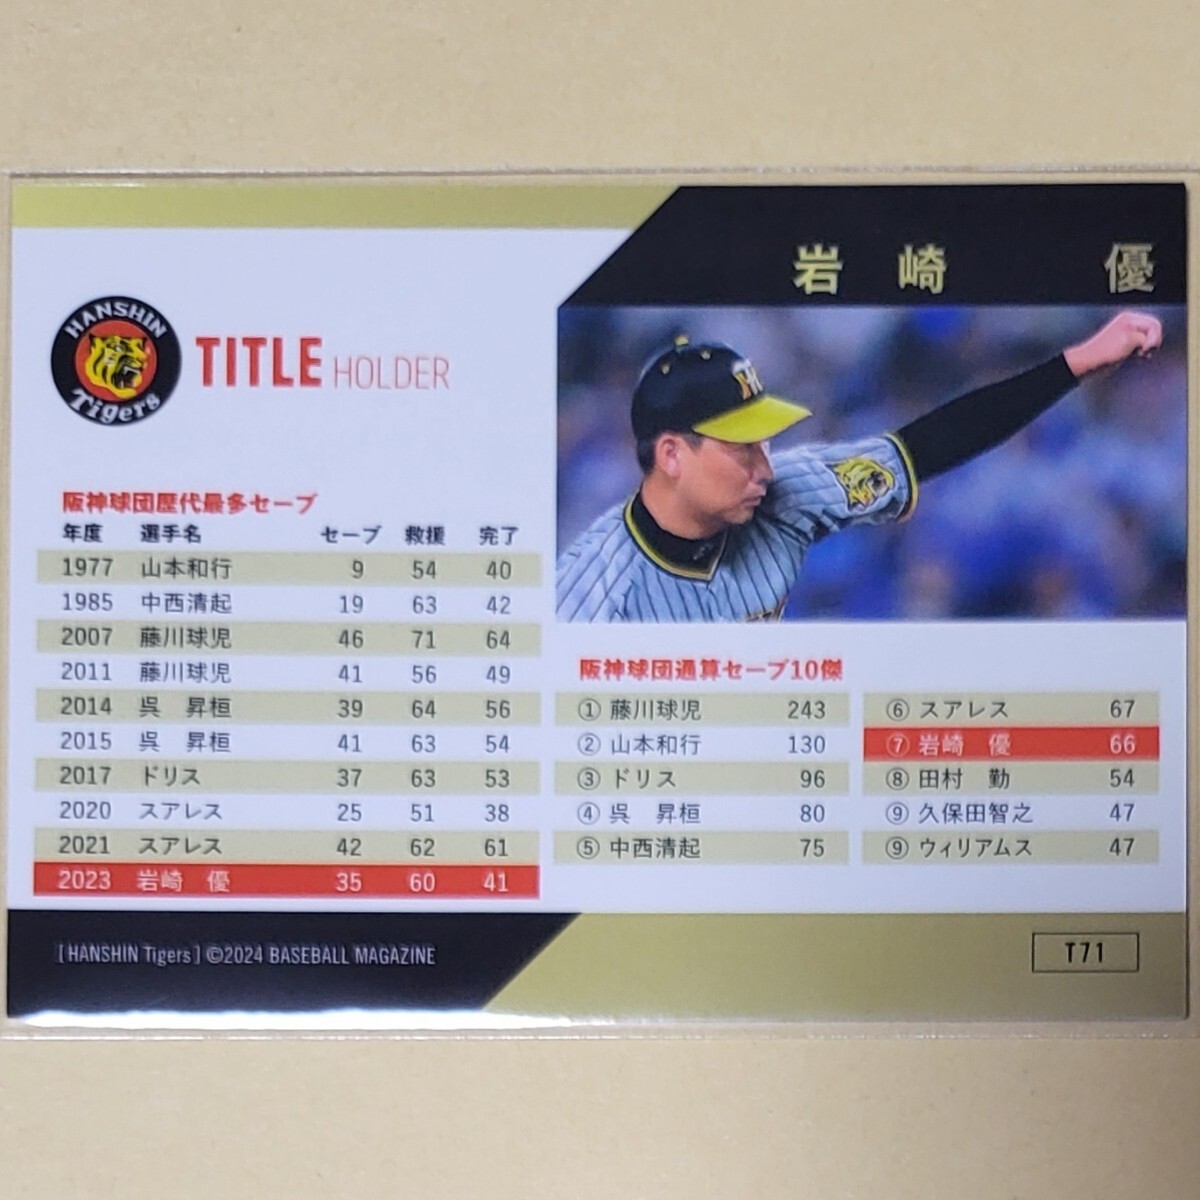 [T71] 岩崎優 BBM 2024 Tigers 阪神タイガース ベースボールカード レギュラーカード タイトルホルダー_画像2